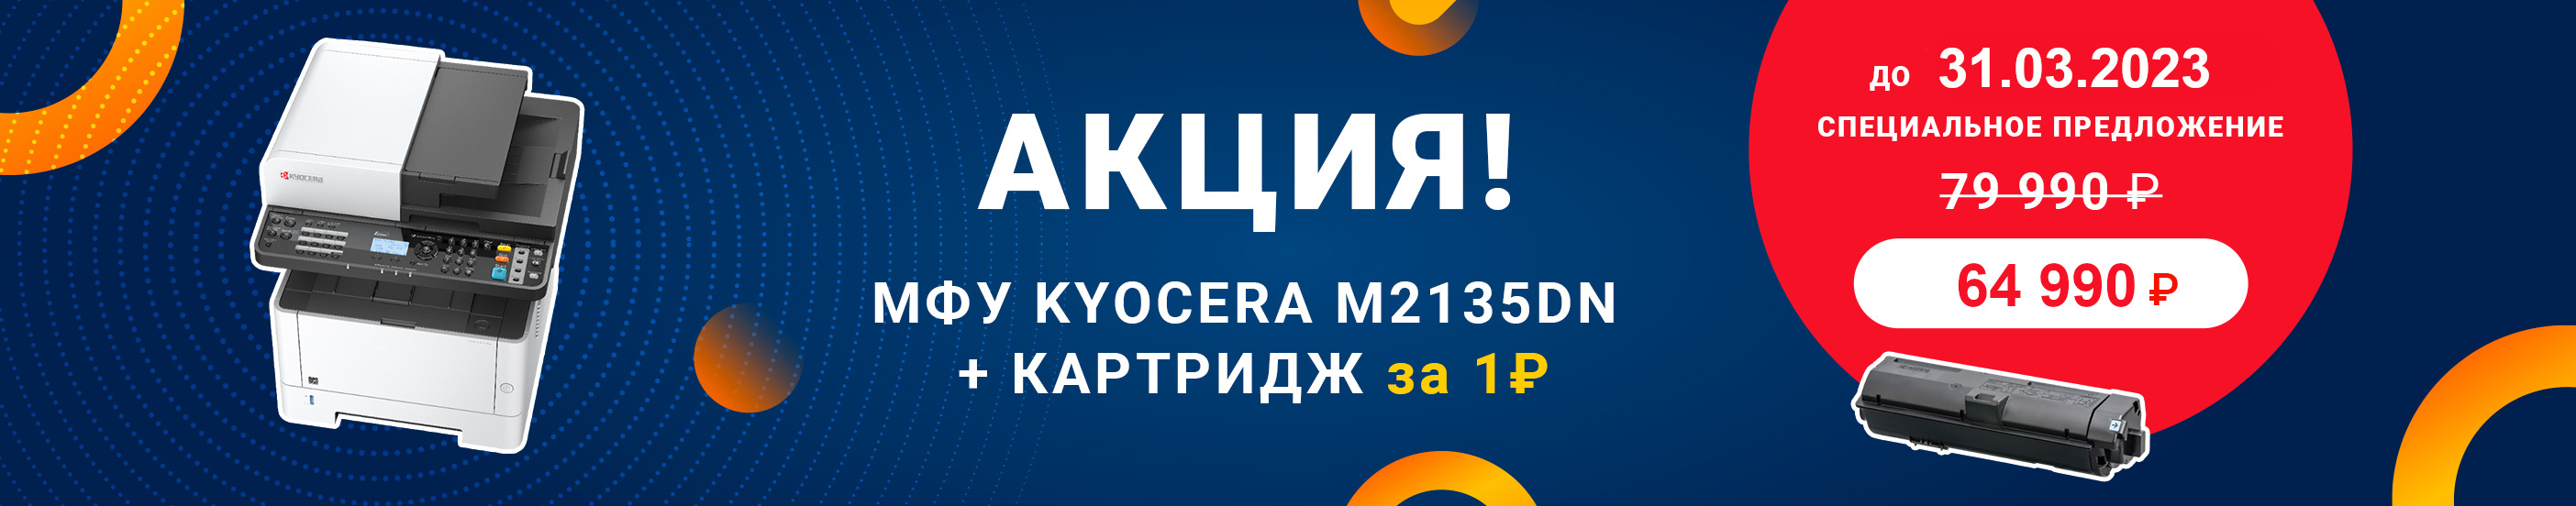 Специальная цена на Kyocera M2135dn и картридж у подарок